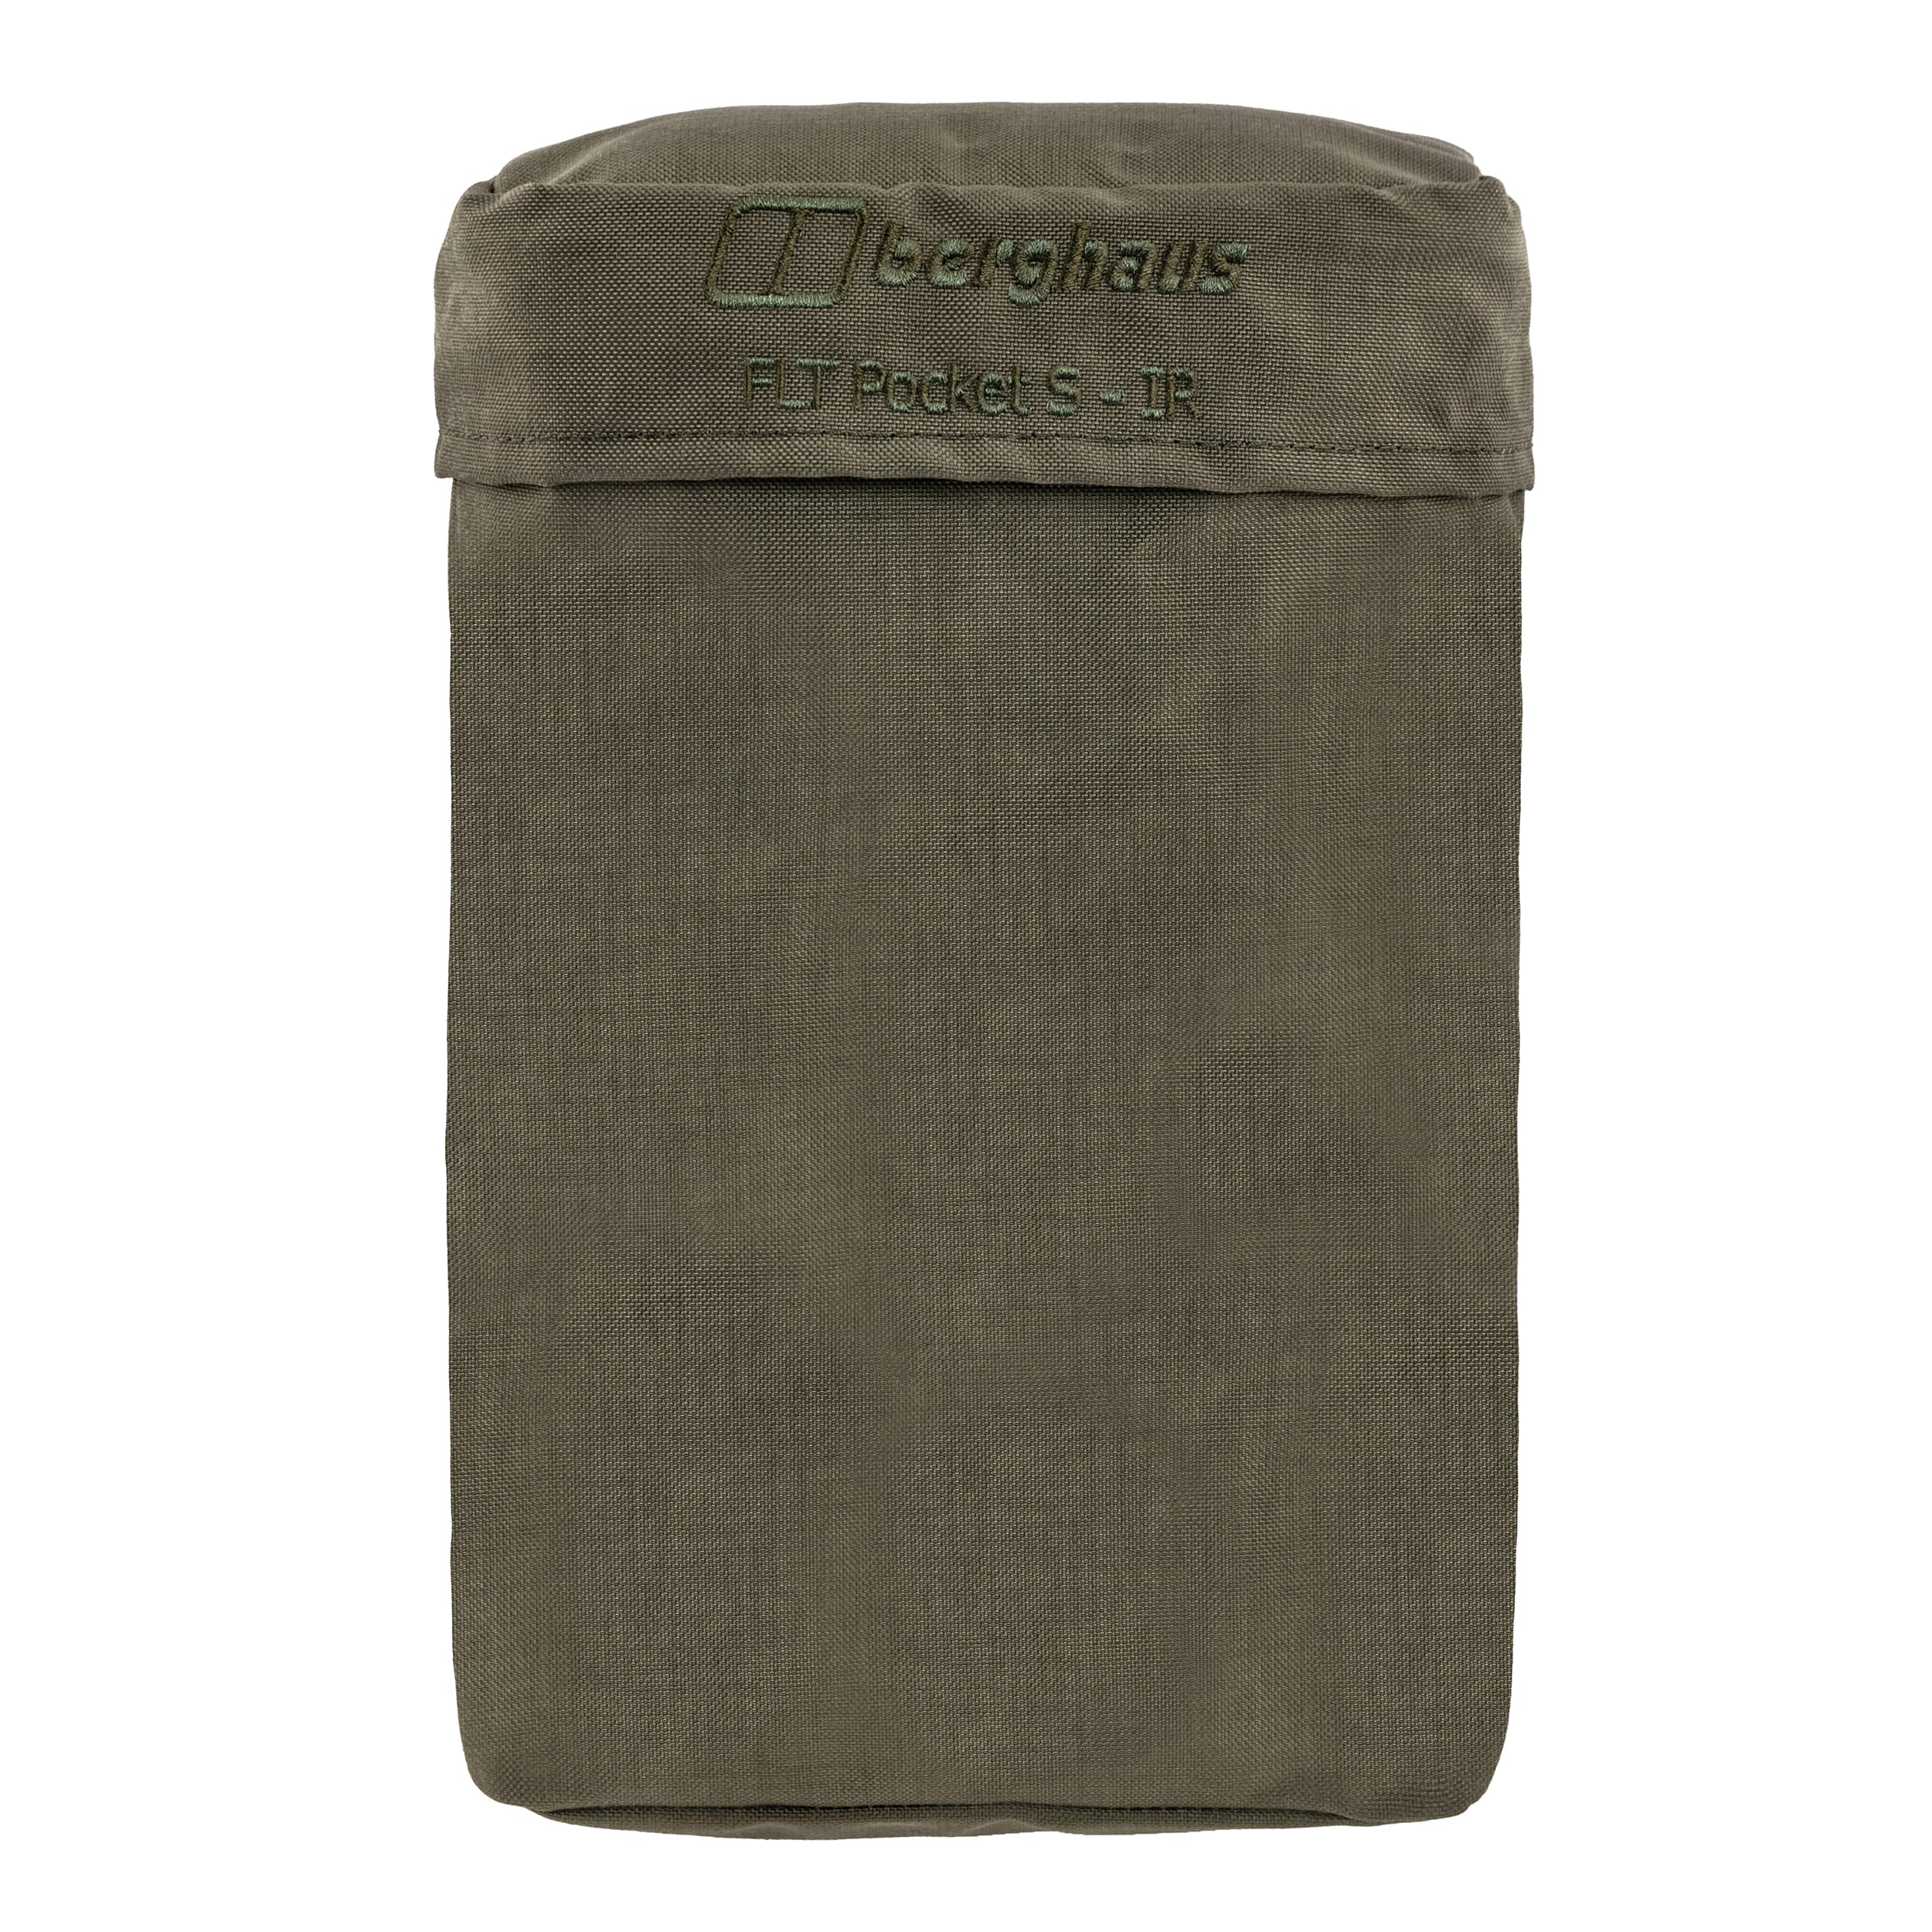 Kieszeń Berghaus Tactical FLT Pockets S IR Stone Grey Olive - 2 szt.